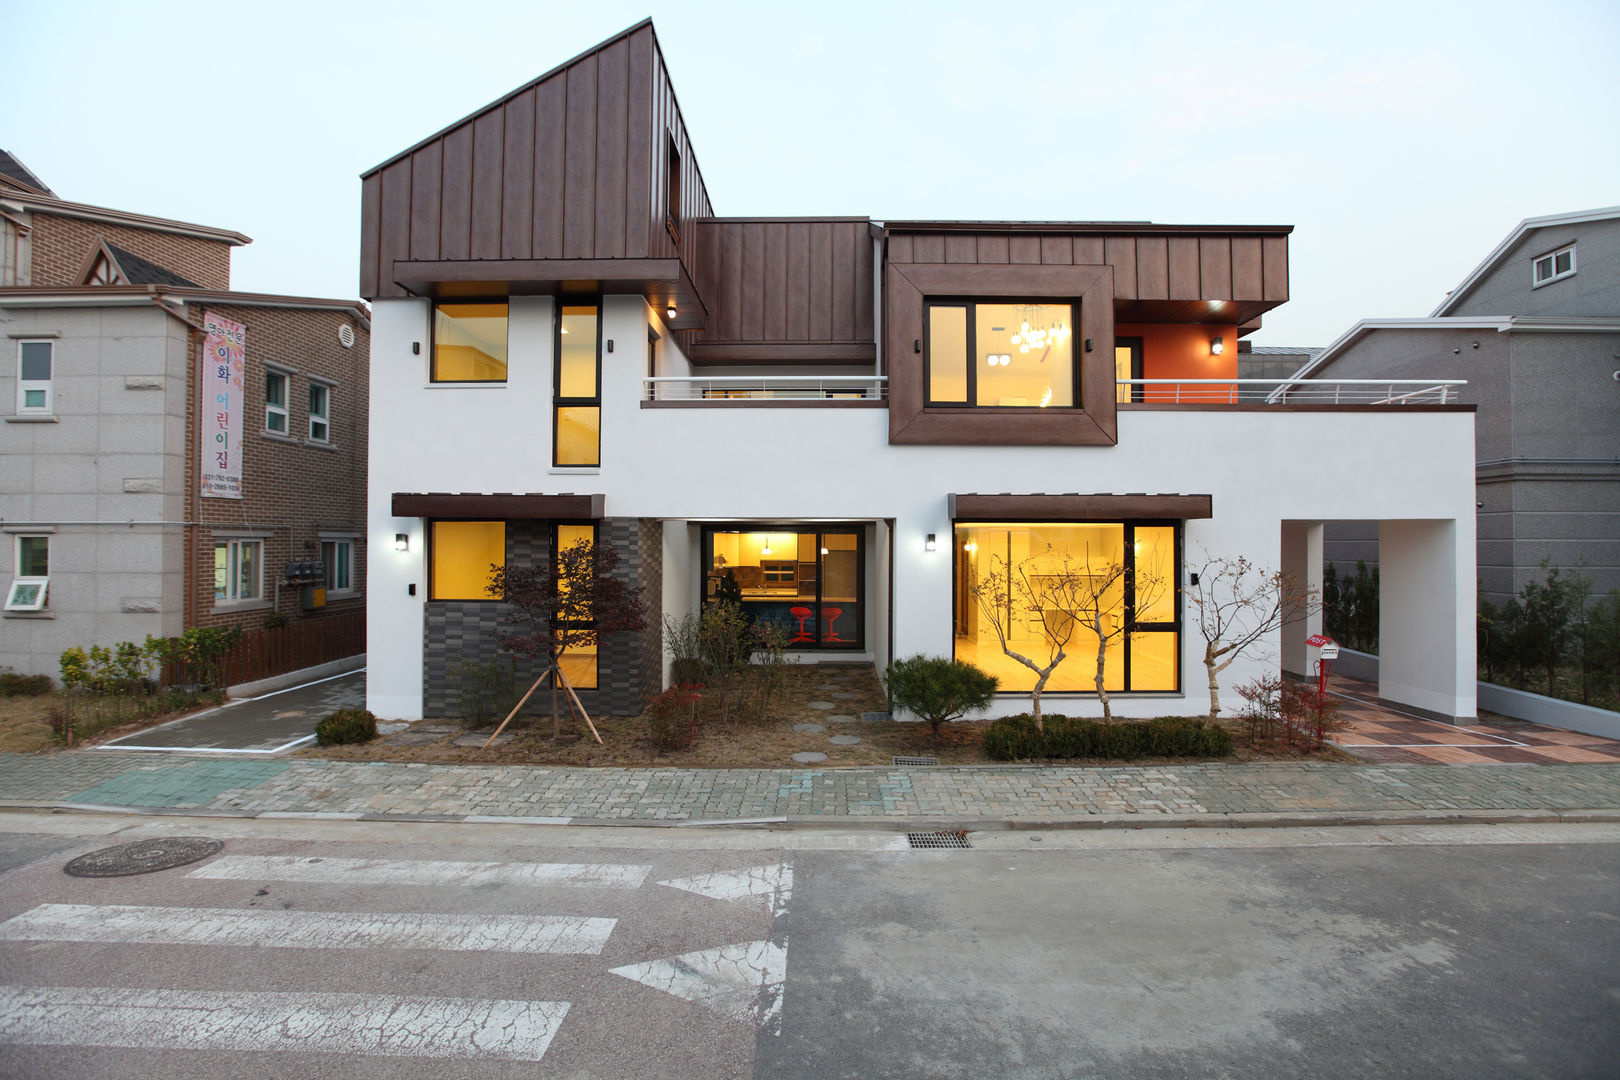 '한지붕 두가구가 사는집' 하남주택, 주택설계전문 디자인그룹 홈스타일토토 주택설계전문 디자인그룹 홈스타일토토 Casas modernas